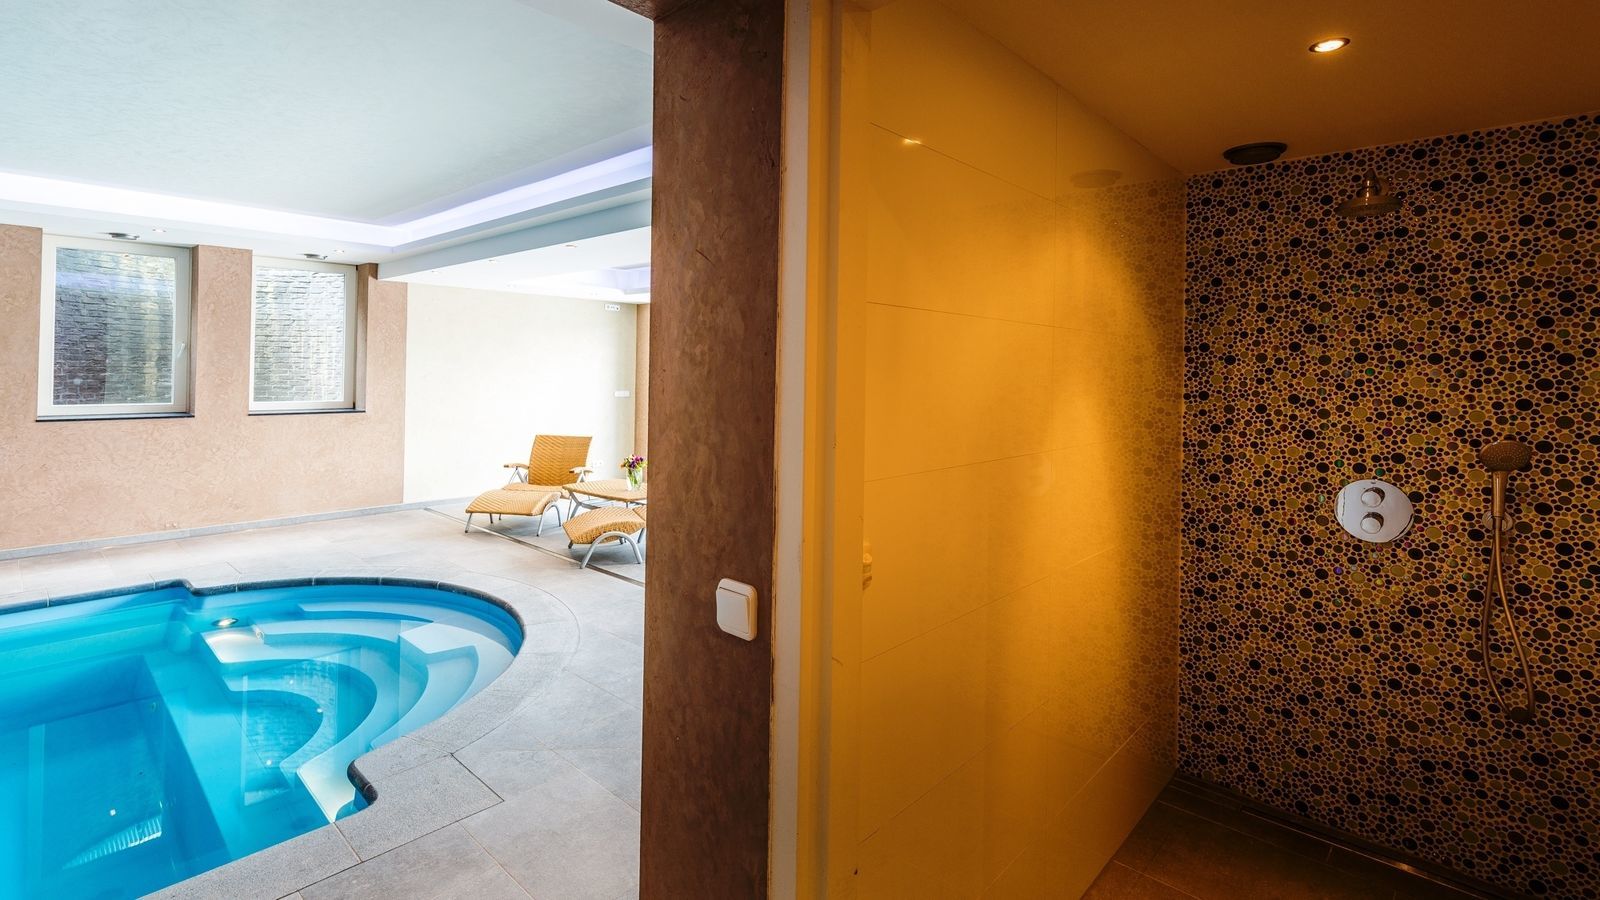 Villapparte-Special Villa's-luxe vakantiehuis voor 21 personen-binnen zwembad-sauna-groepsaccommodatie-Zuid Limburg-luxe douche